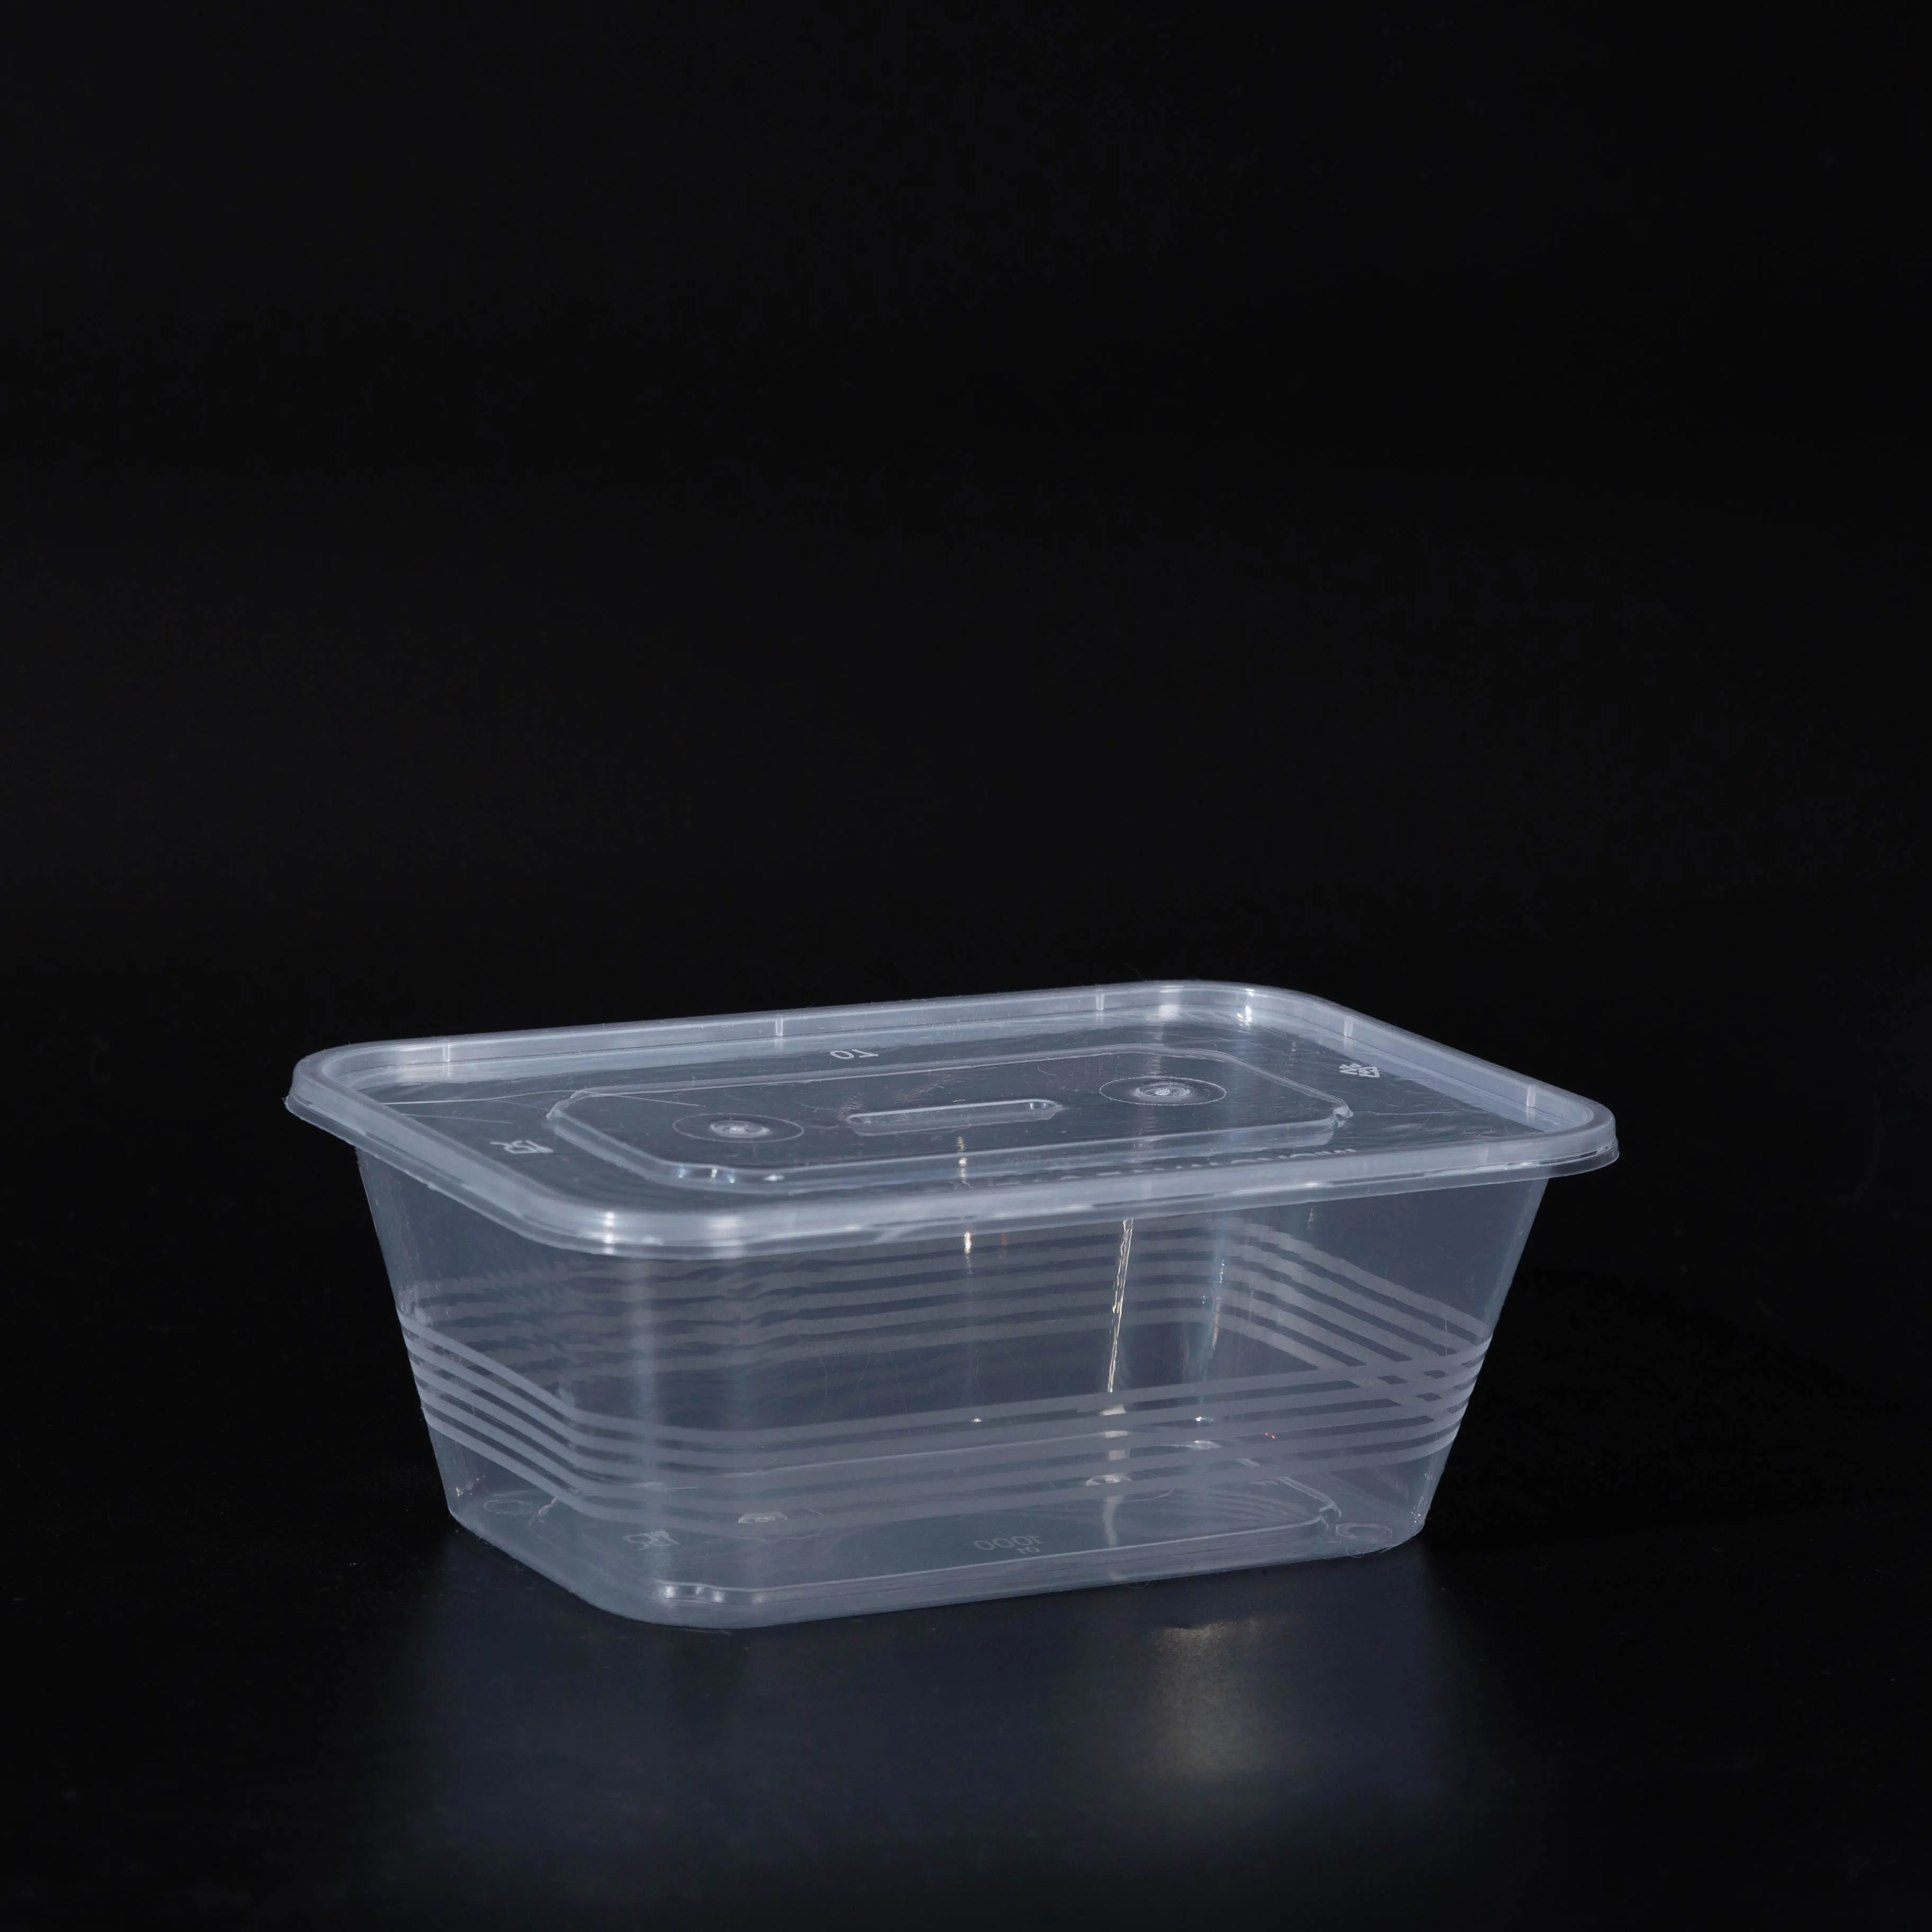 عالية الجودة 500/750/1000ML آمن للاستخدام بالميكروويف حاويات طعام بلاستيكية مزودة بأغطية صناديق طعام خارجية